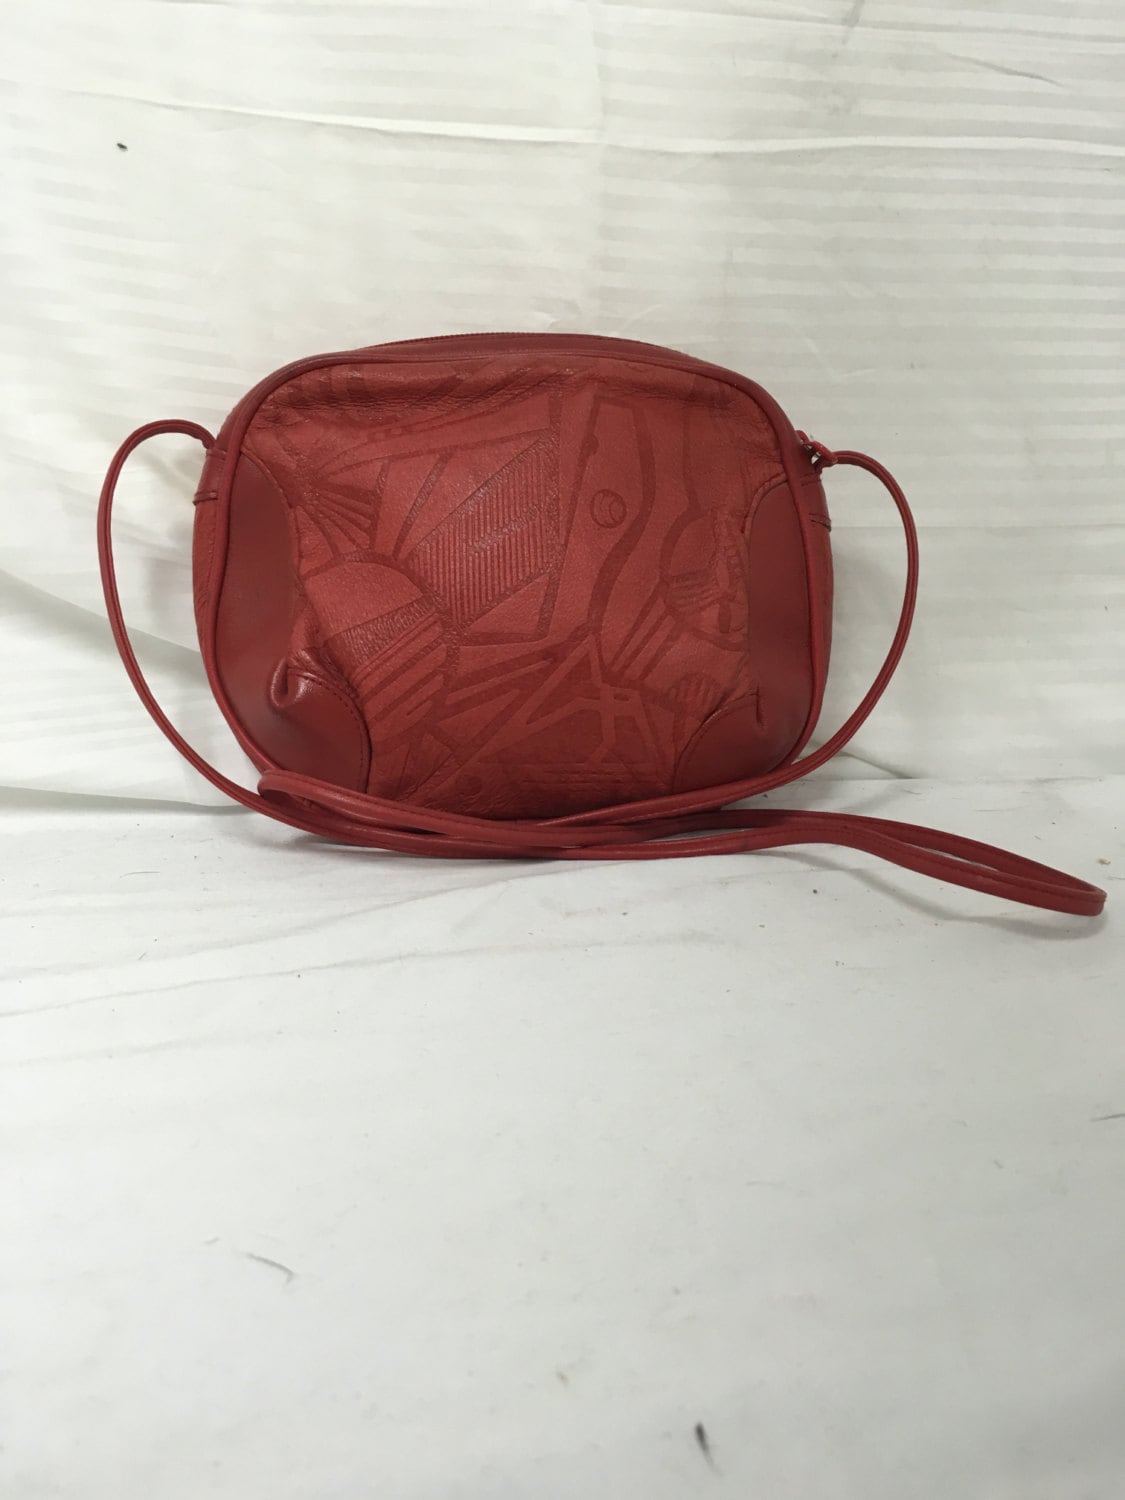 ALLE Hand-tooled Leather Shoulder Bag luna, Brown Leather Hobo